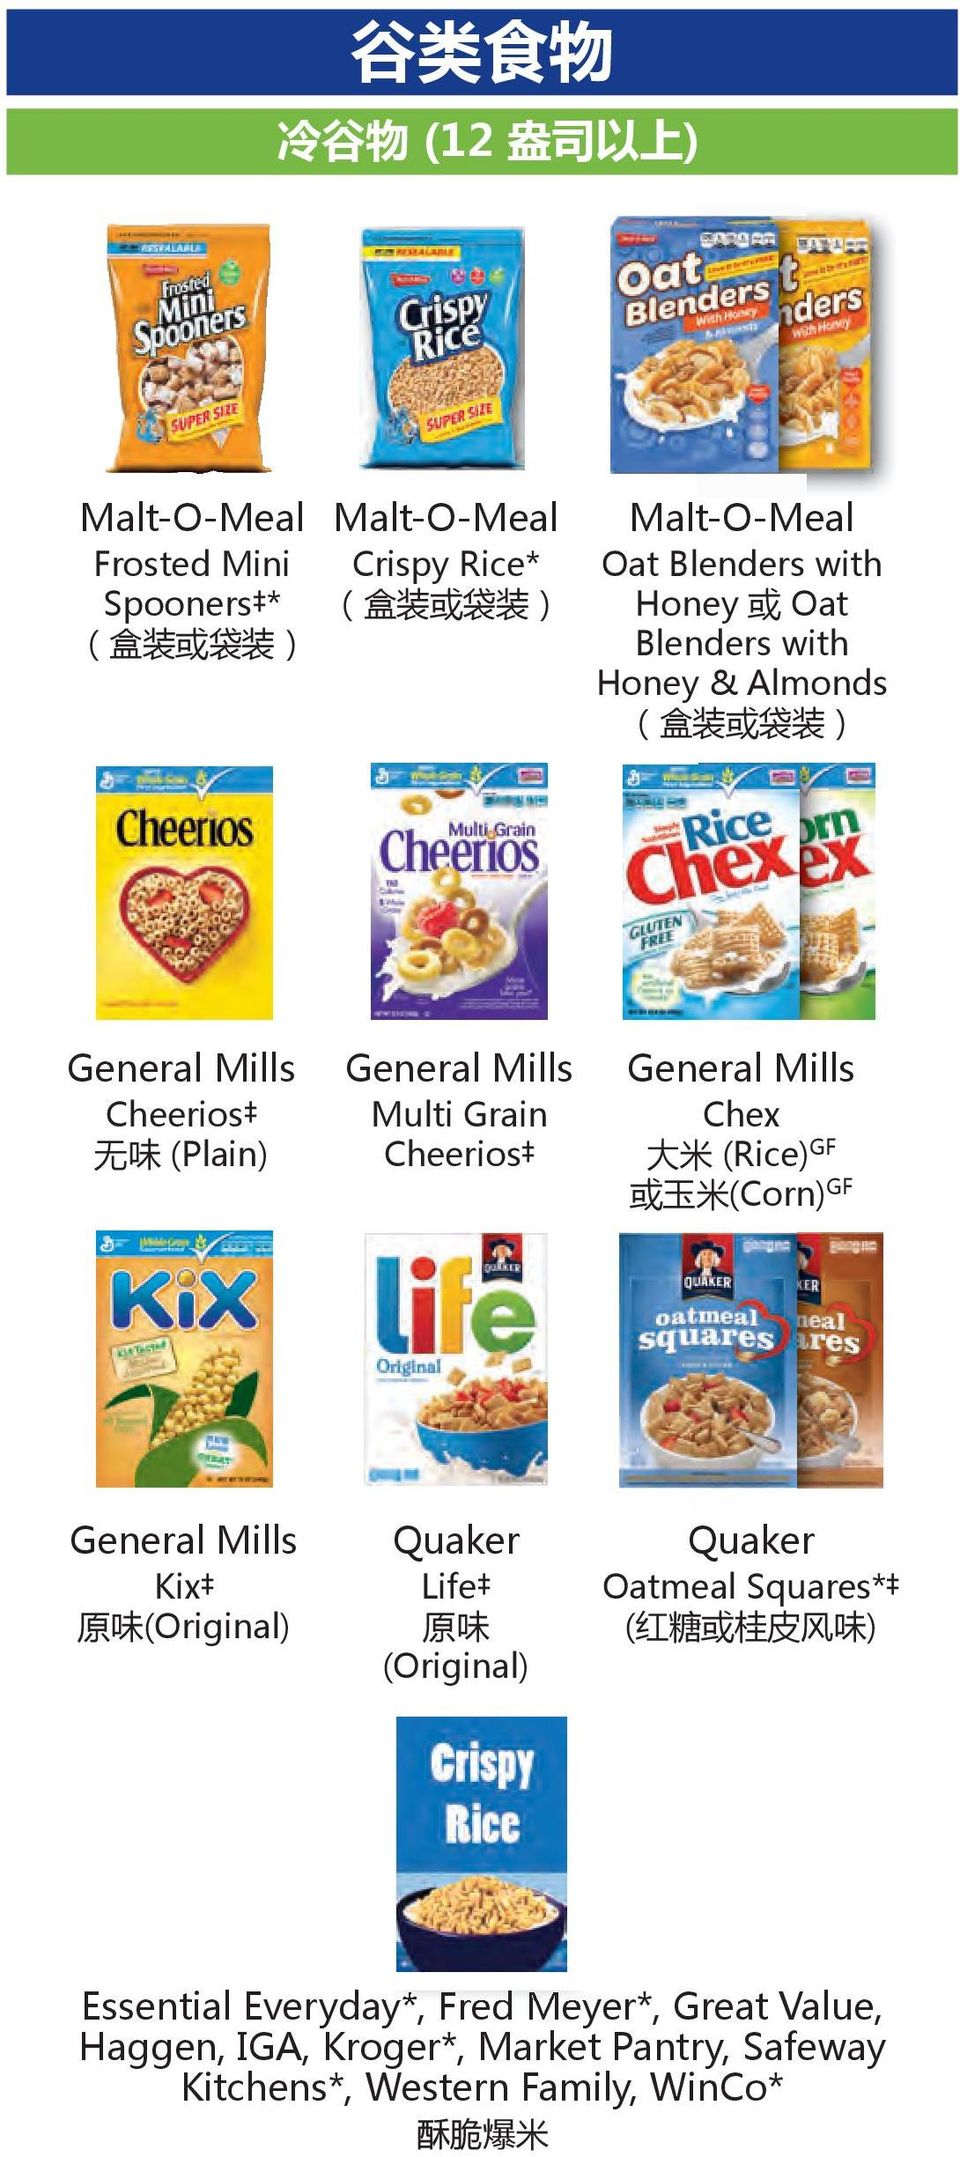 General Mills Chex 大 米 (Rice) GF 或 玉 米 (Corn) GF General Mills Kix 原 味 (Original) Quaker Life 原 味 (Original) Quaker Oatmeal Squares* ( 红 糖